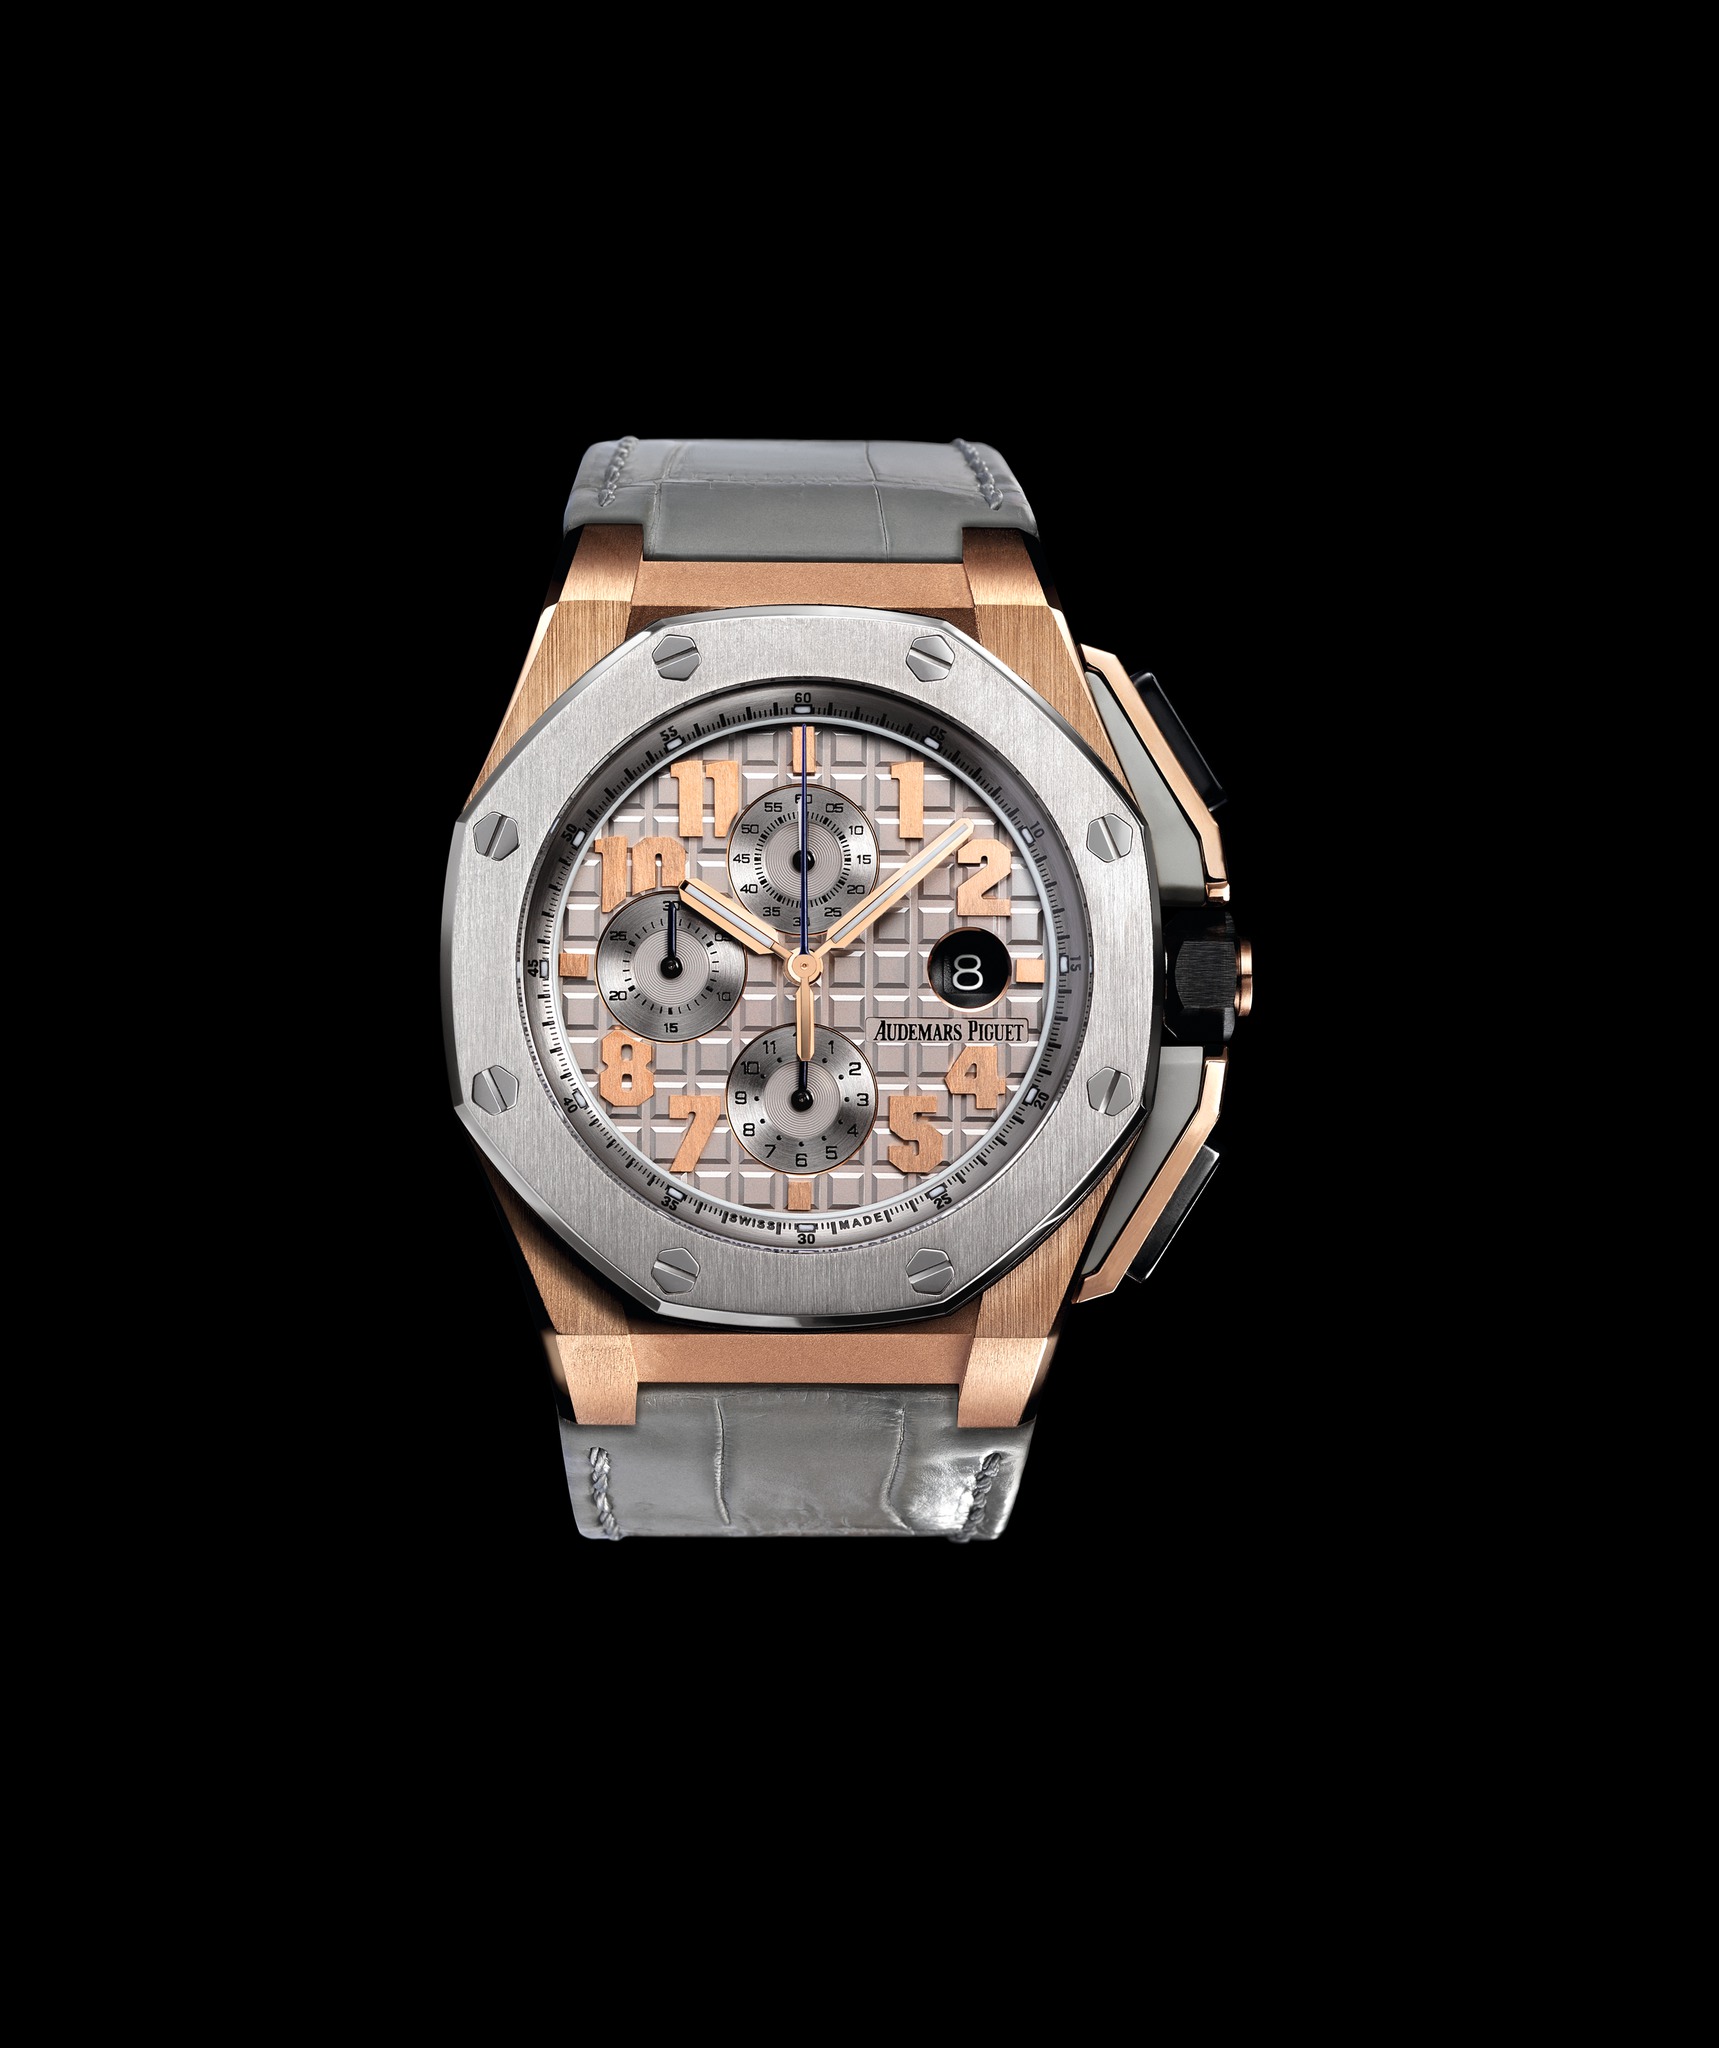 Audemars Piguet Royal Oak Offshore LeBron James Pink Gold watch REF: 26210OI.OO.A109CR.01